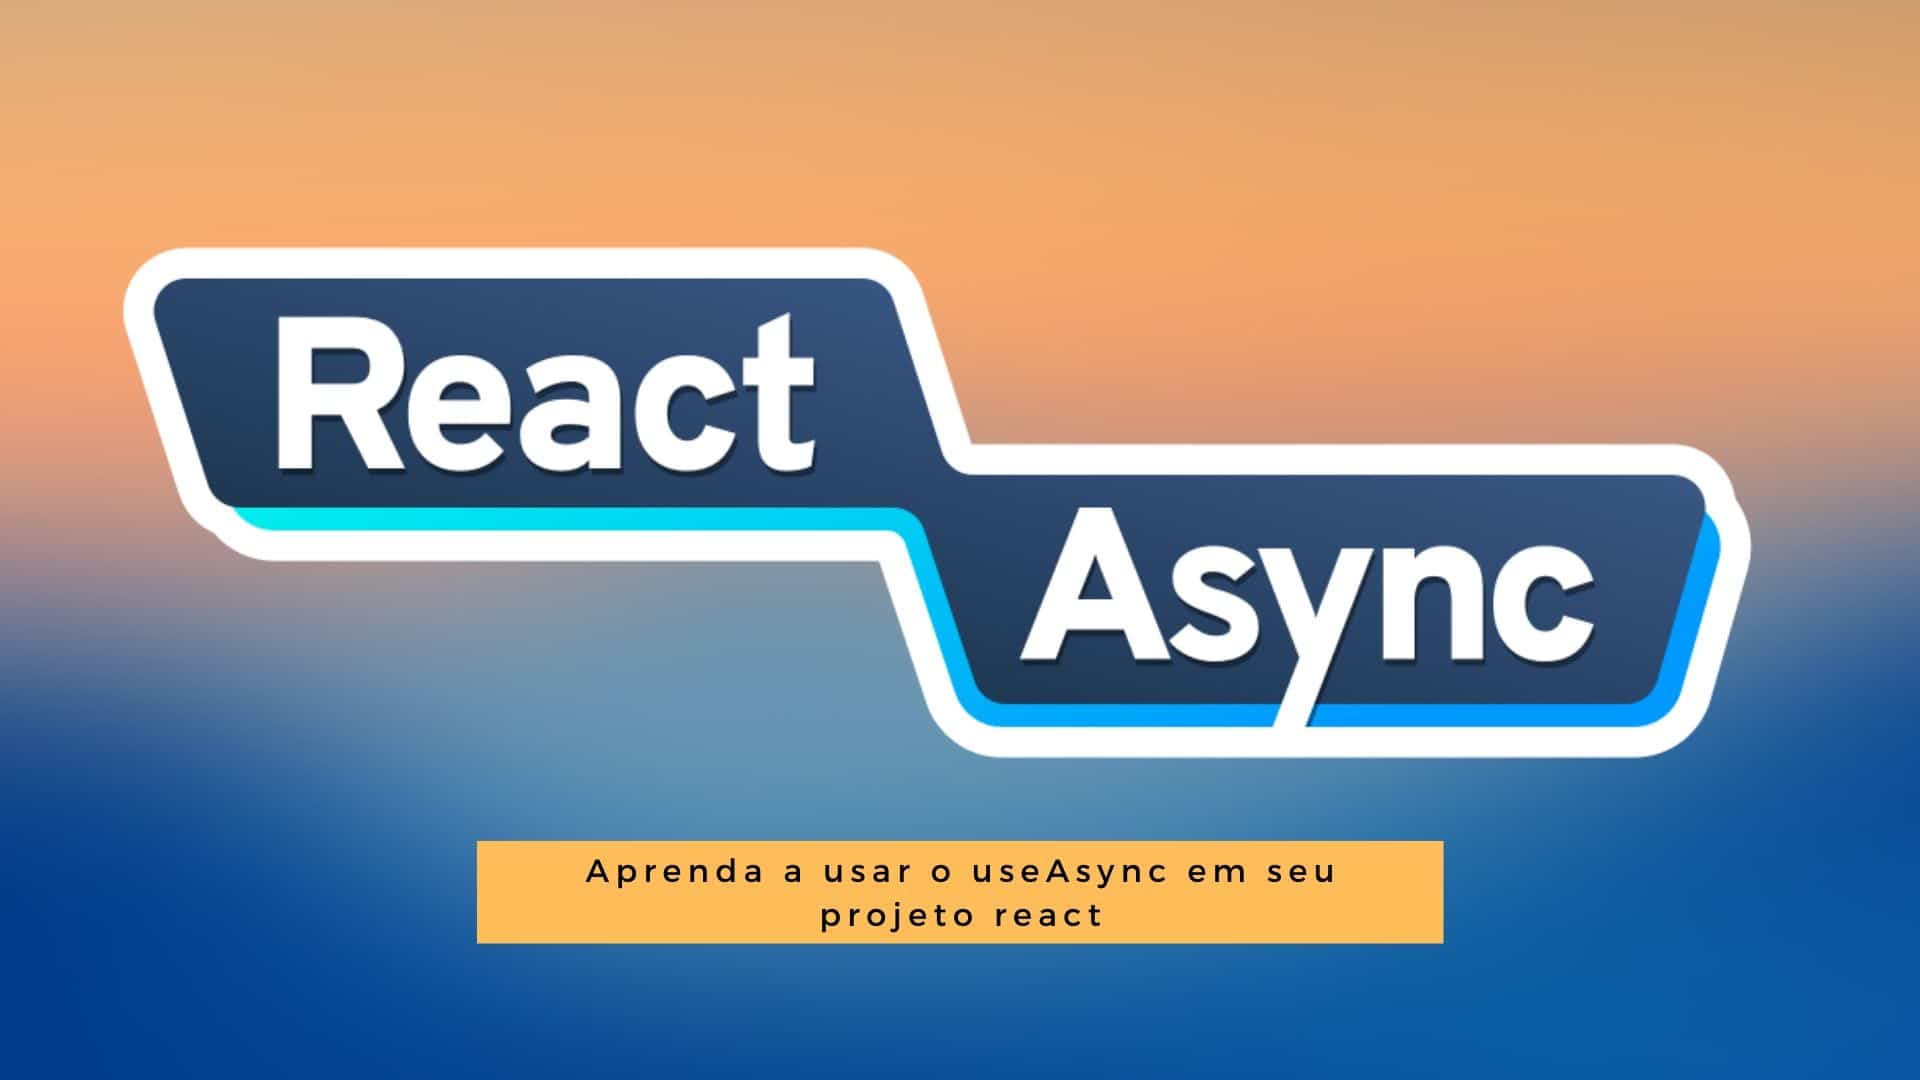 ReactAsync